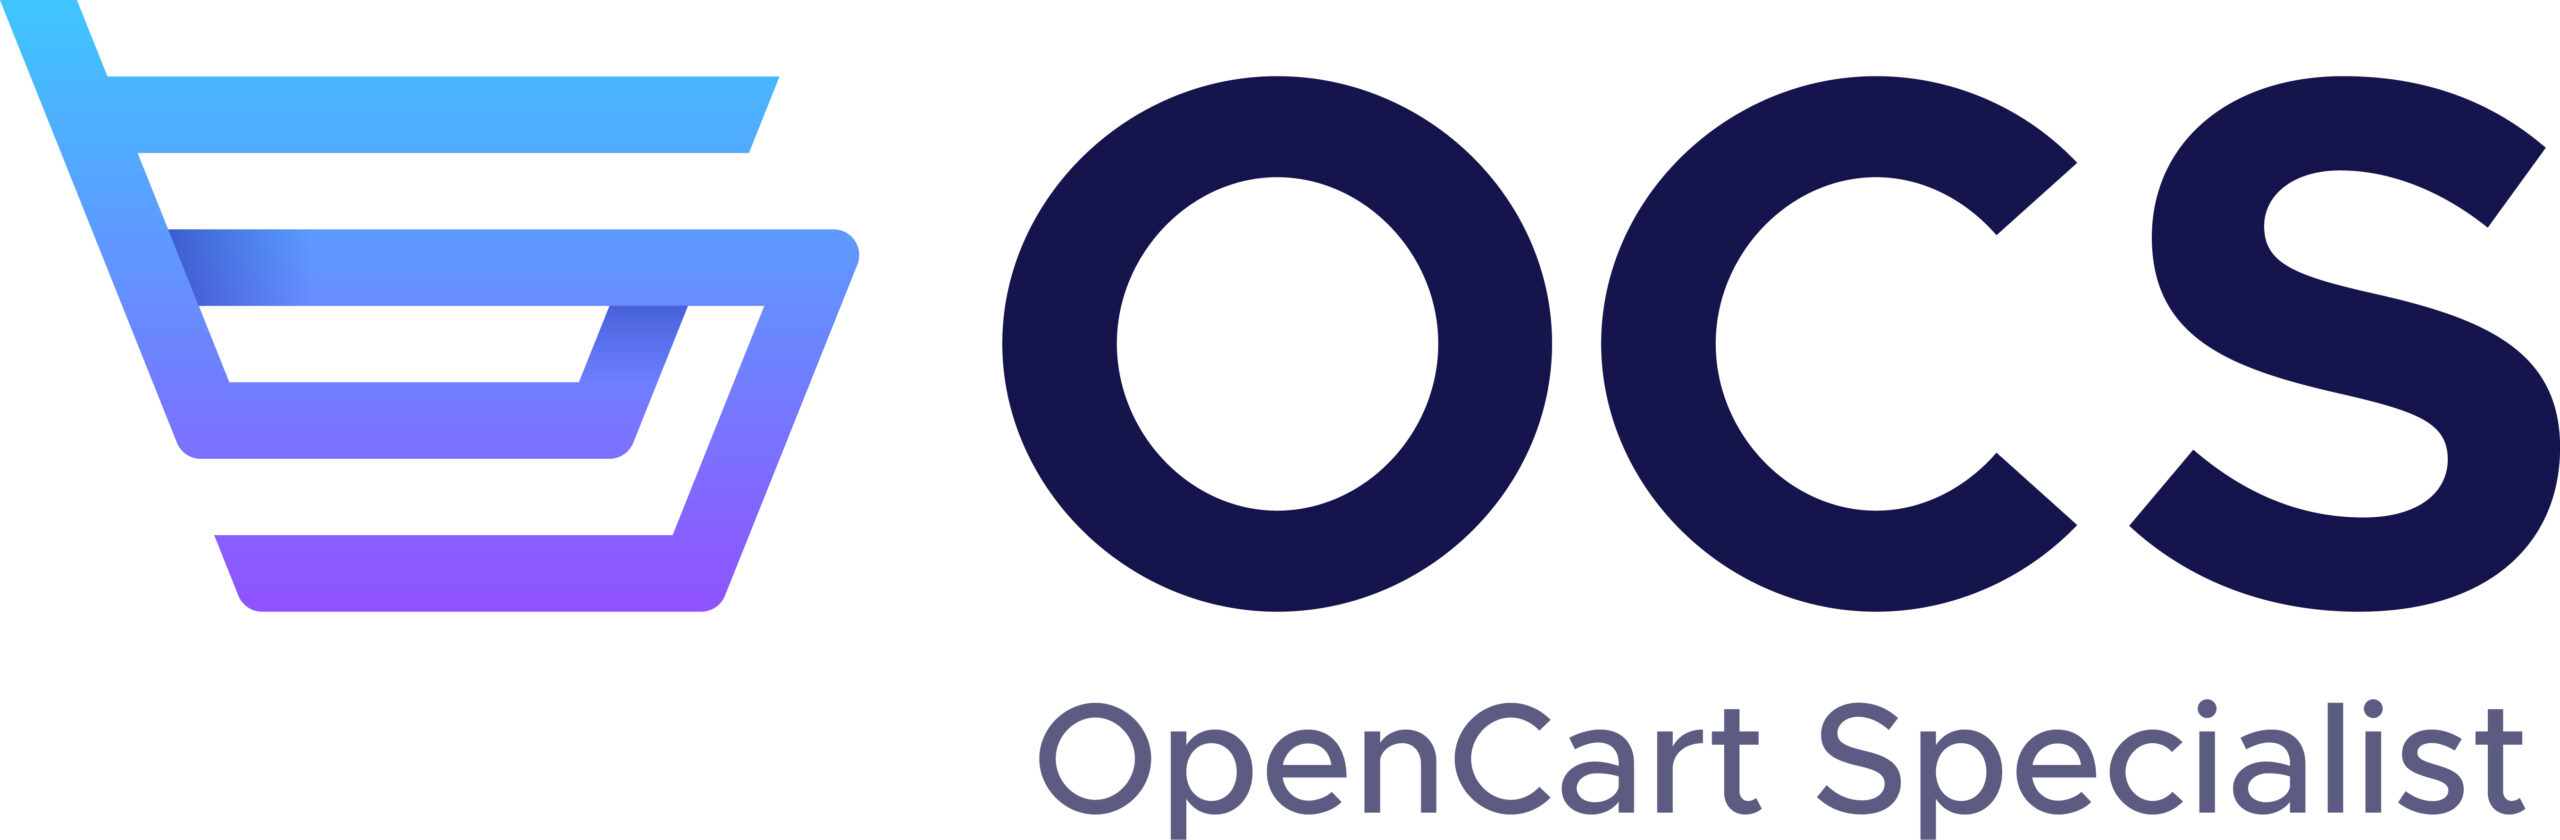 OpenCart Specialist